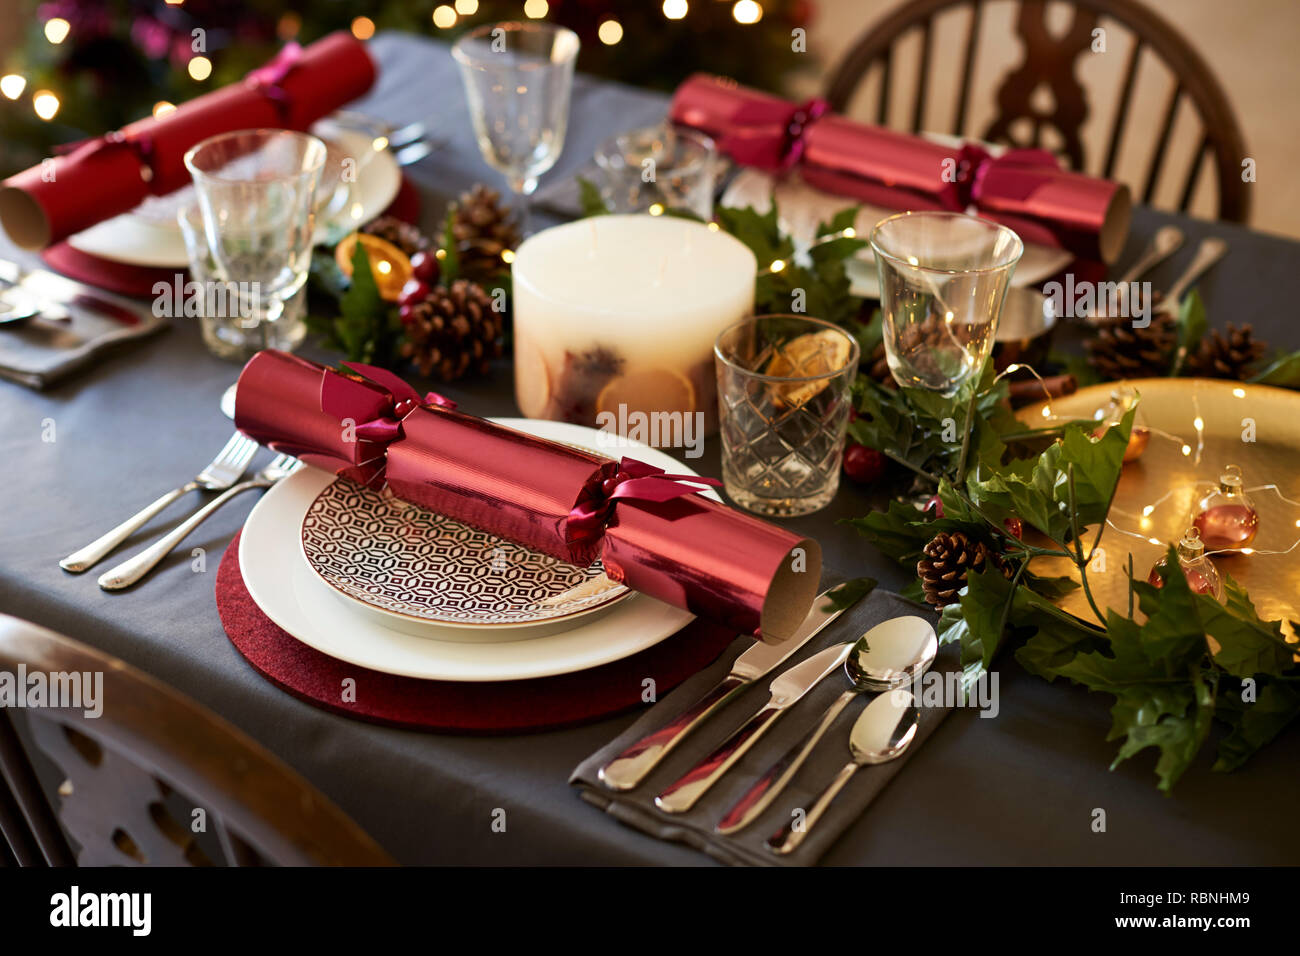 Close up de table de Noël avec les biscuits de Noël organisé sur les plaques et les décorations de table rouge et vert, elevated view Banque D'Images